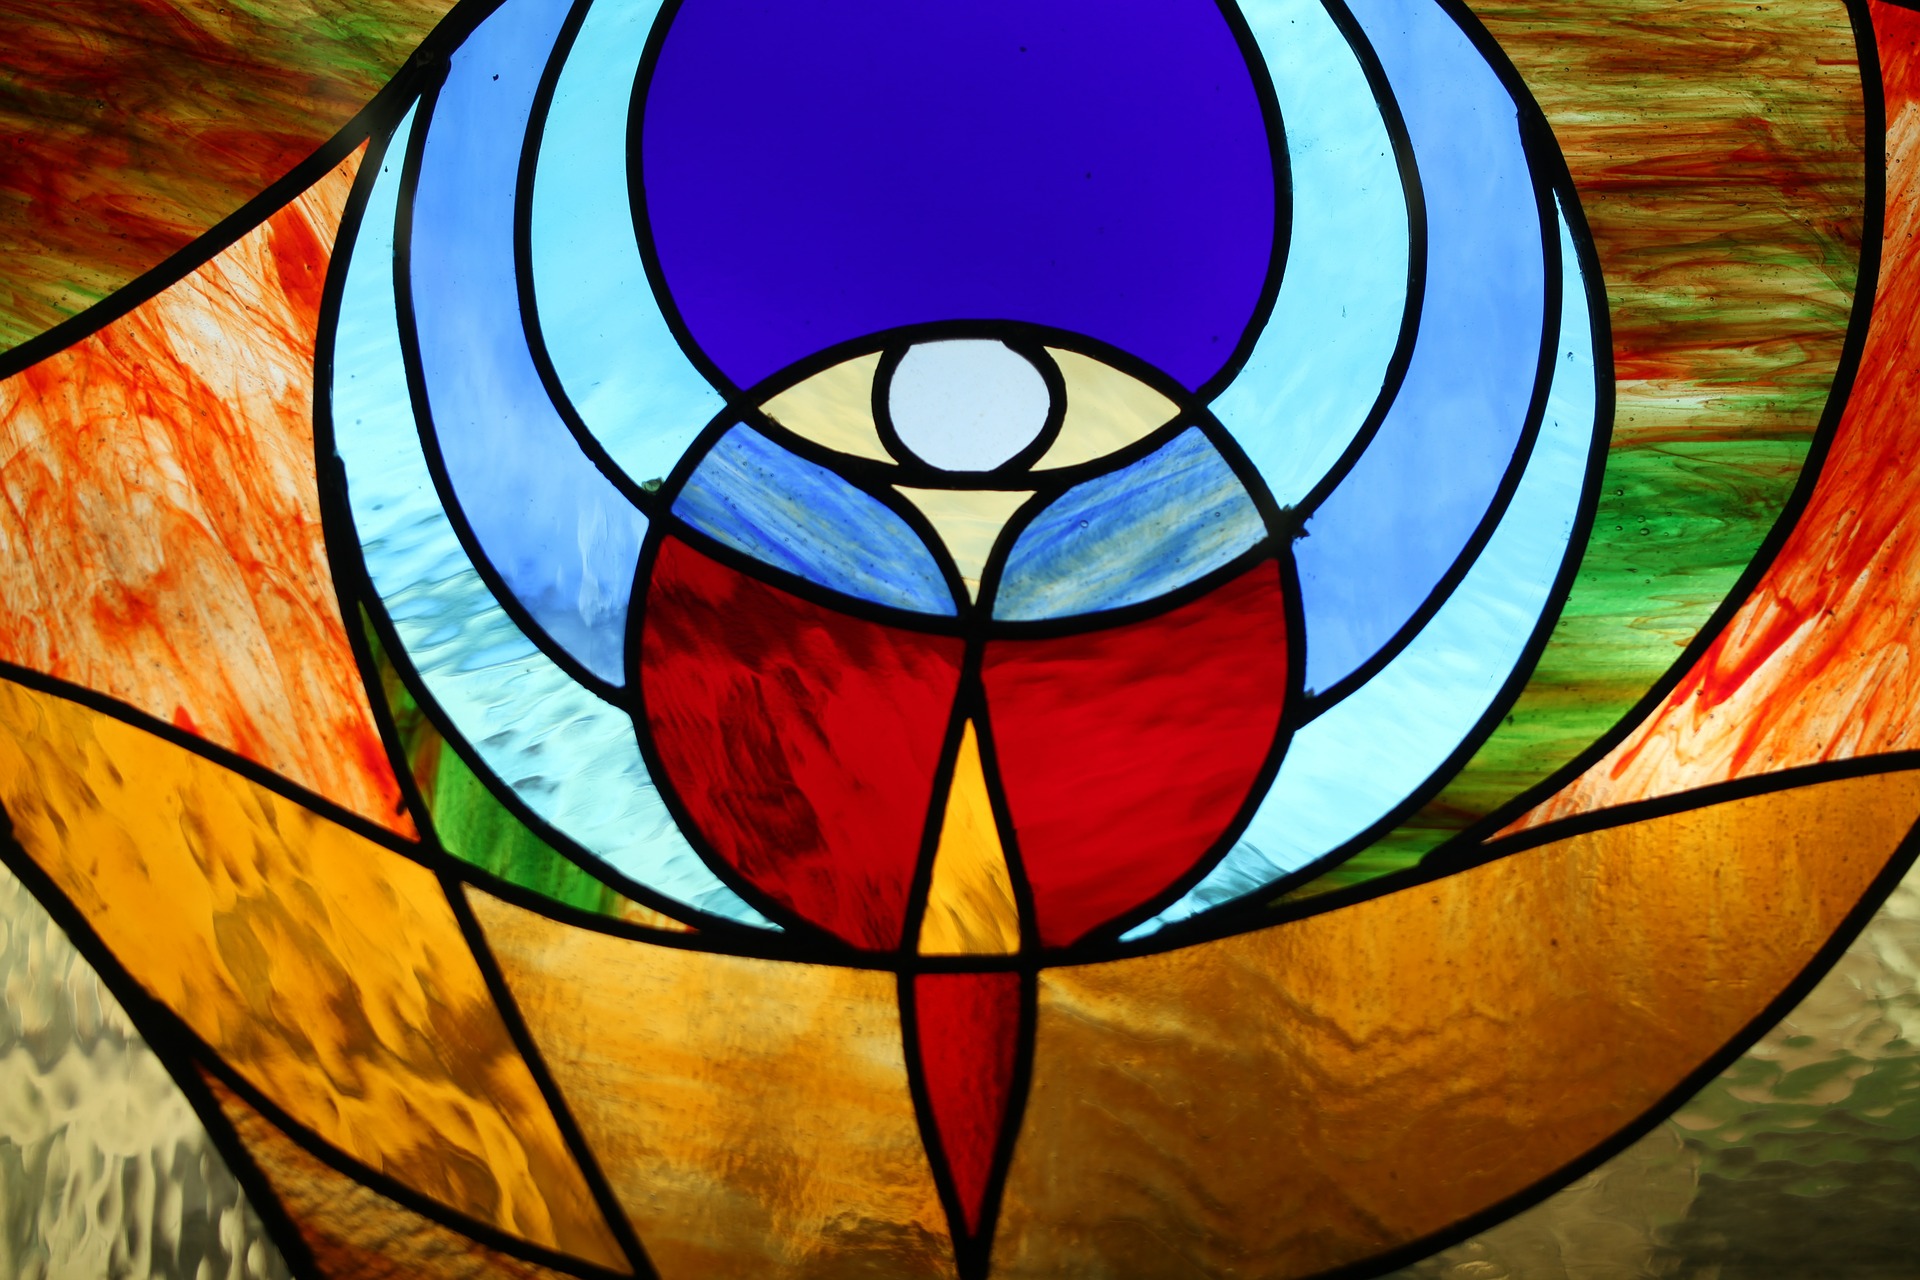 Kirchenfenster (c) Bild von linaberlin auf Pixabay